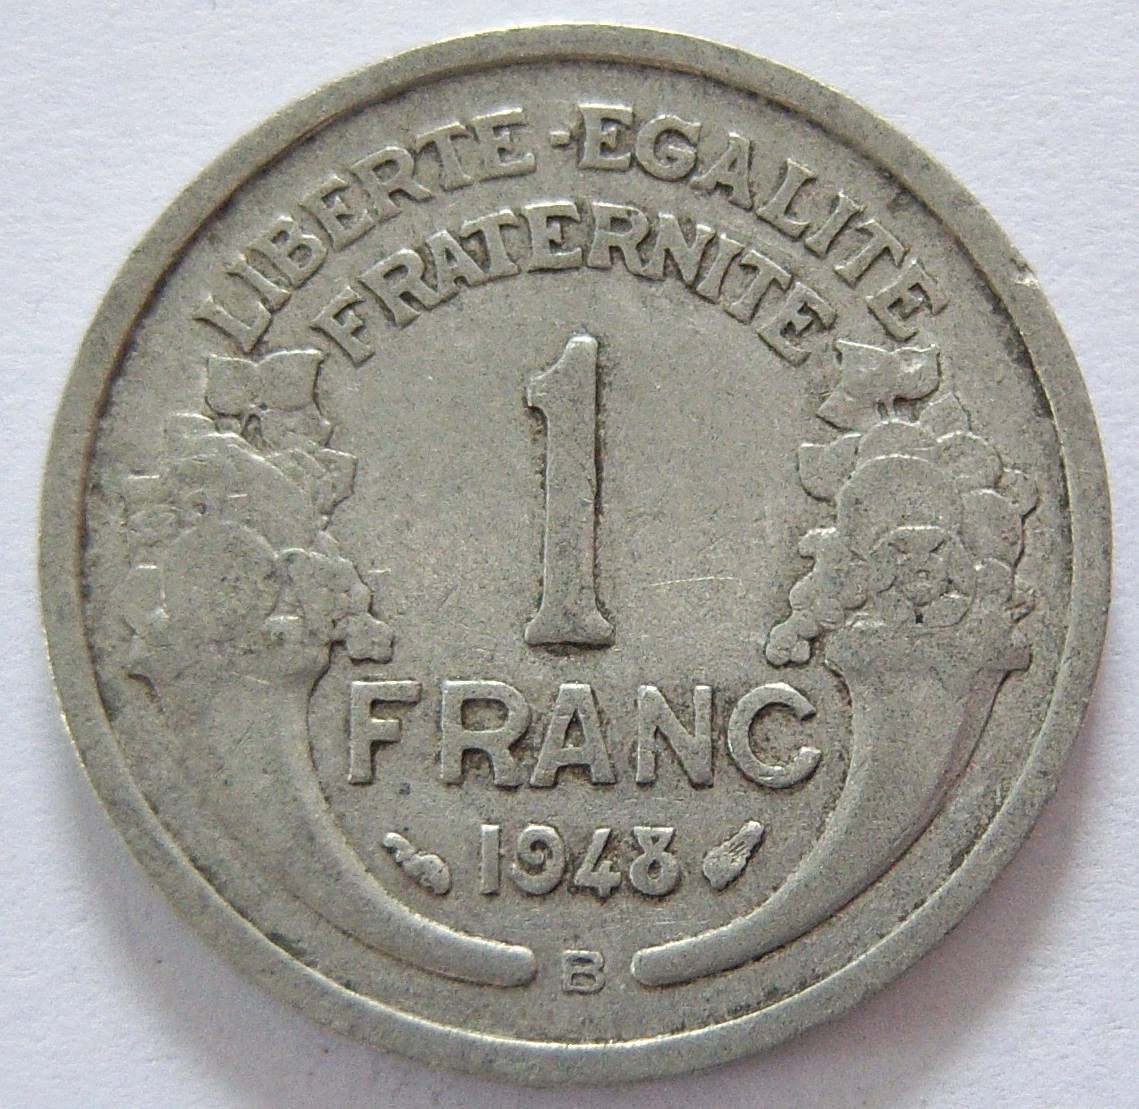  Frankreich 1 Franc 1948 B   